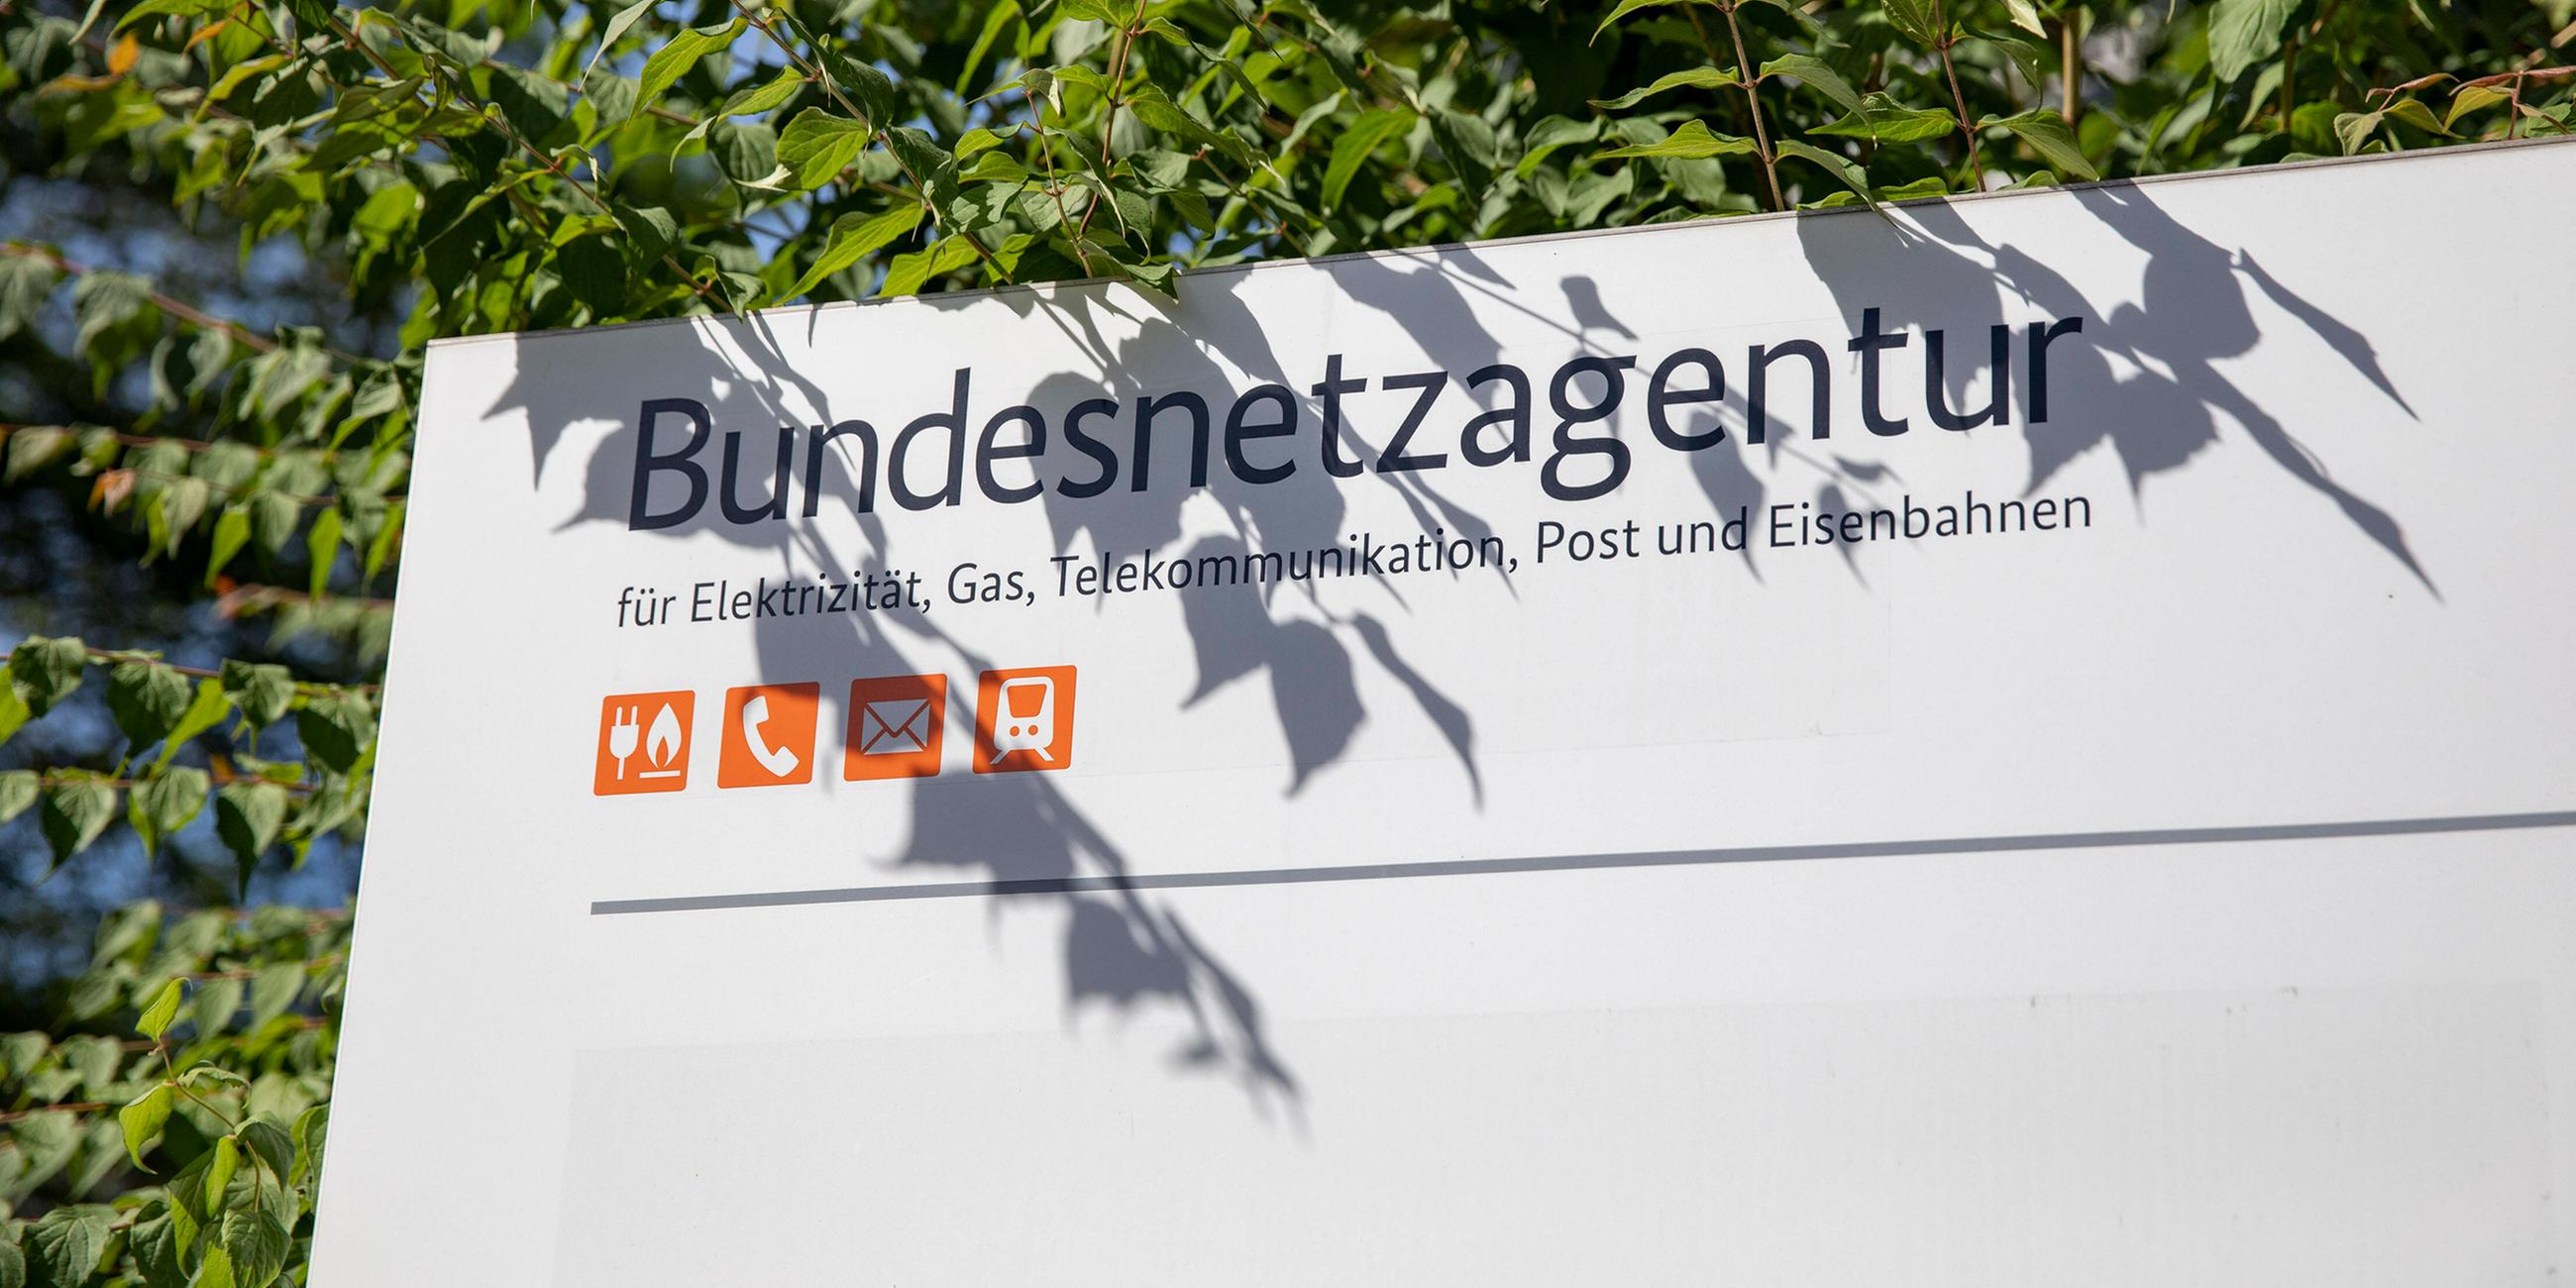 Schild mit Aufschrift "Bundesnetzagentur" am 19.06.2021 in Bonn